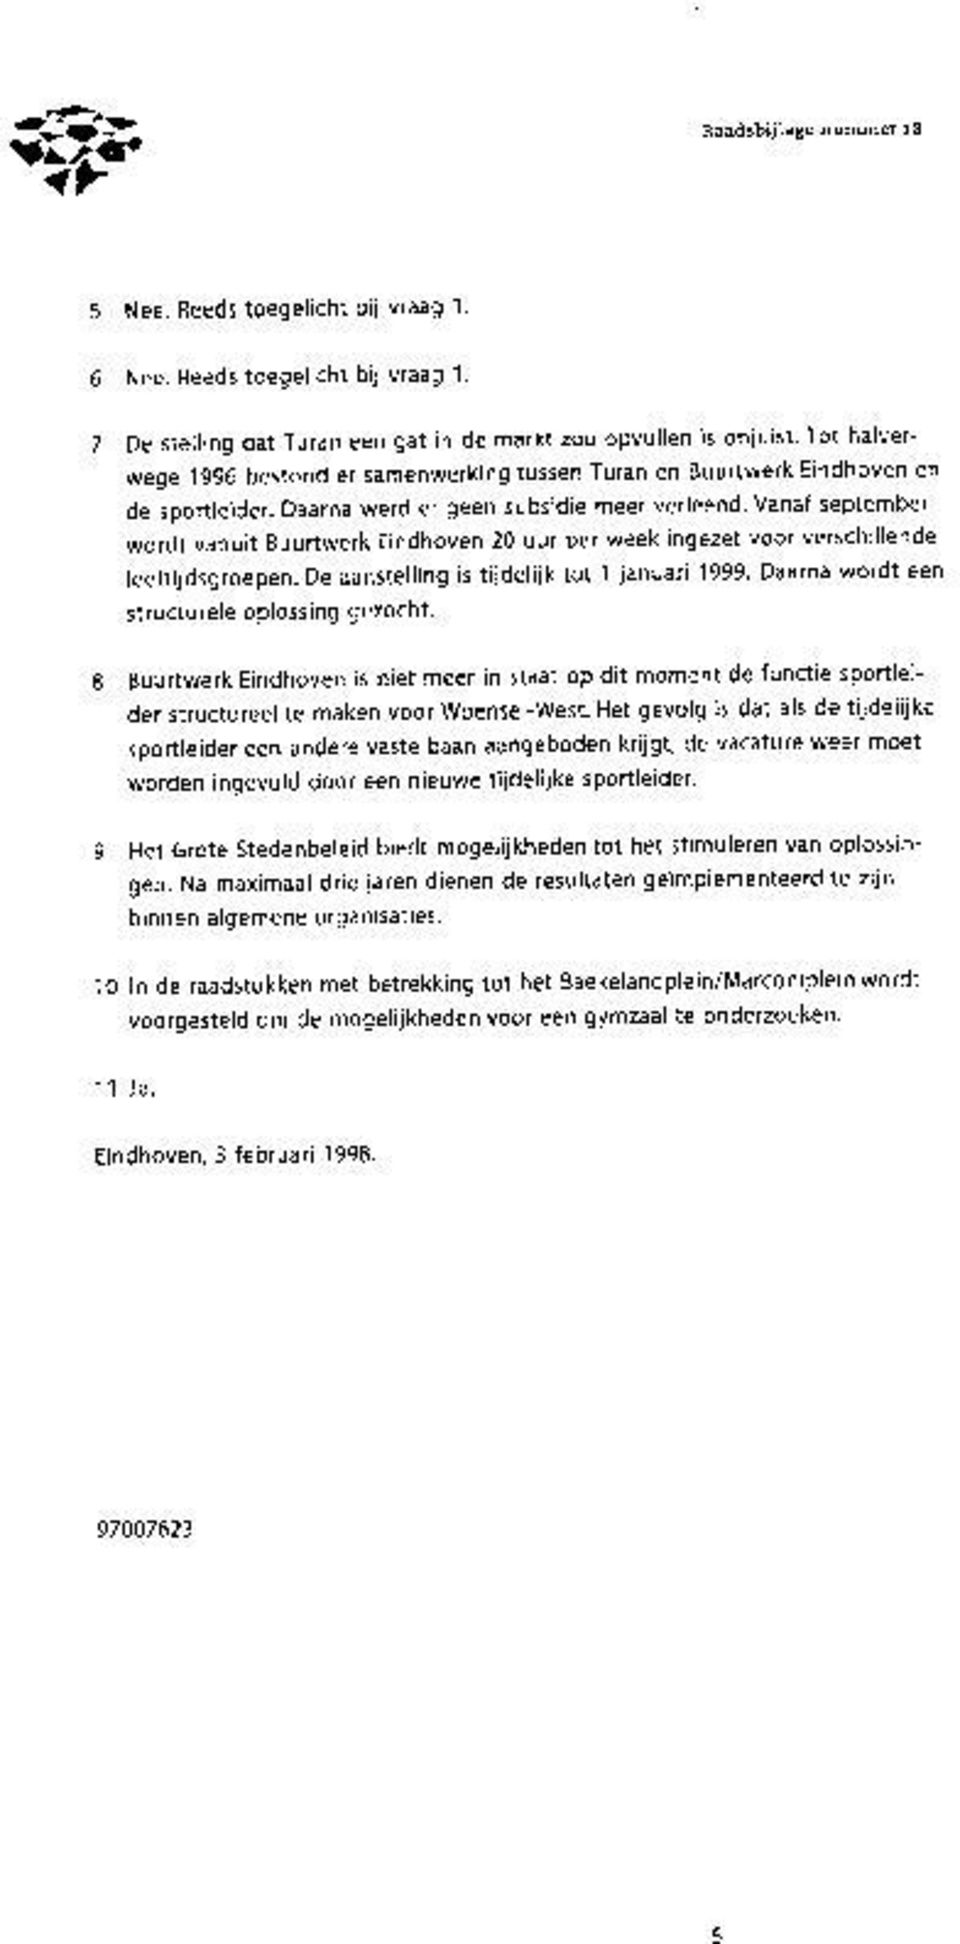 Vanaf september wordt vanuit Buurtwerk Eindhoven 20 uur per week ingezet voor verschillende leeftijdsgroepen. De aanstelling is tijdelijk tot 1 januari 1999.